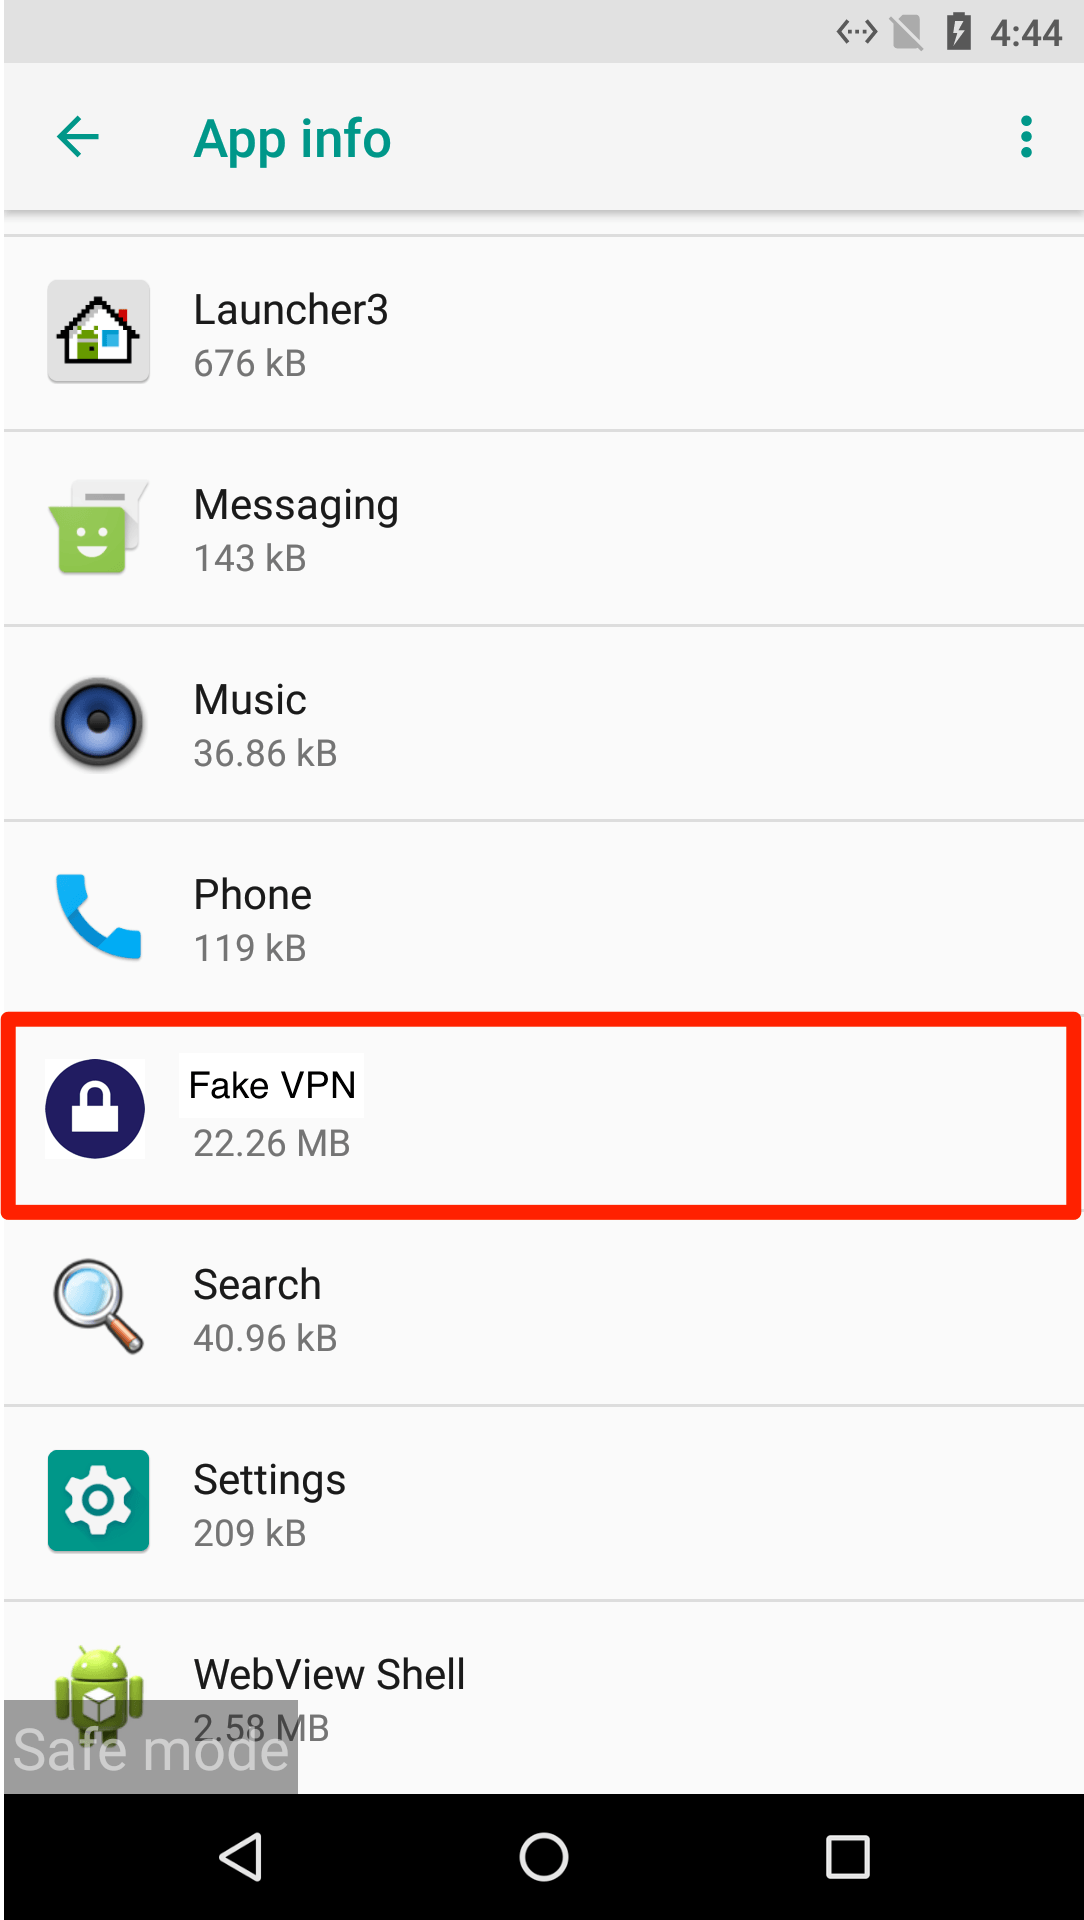 Informazioni sull'app VPN falsa in modalità provvisoria per telefono Android